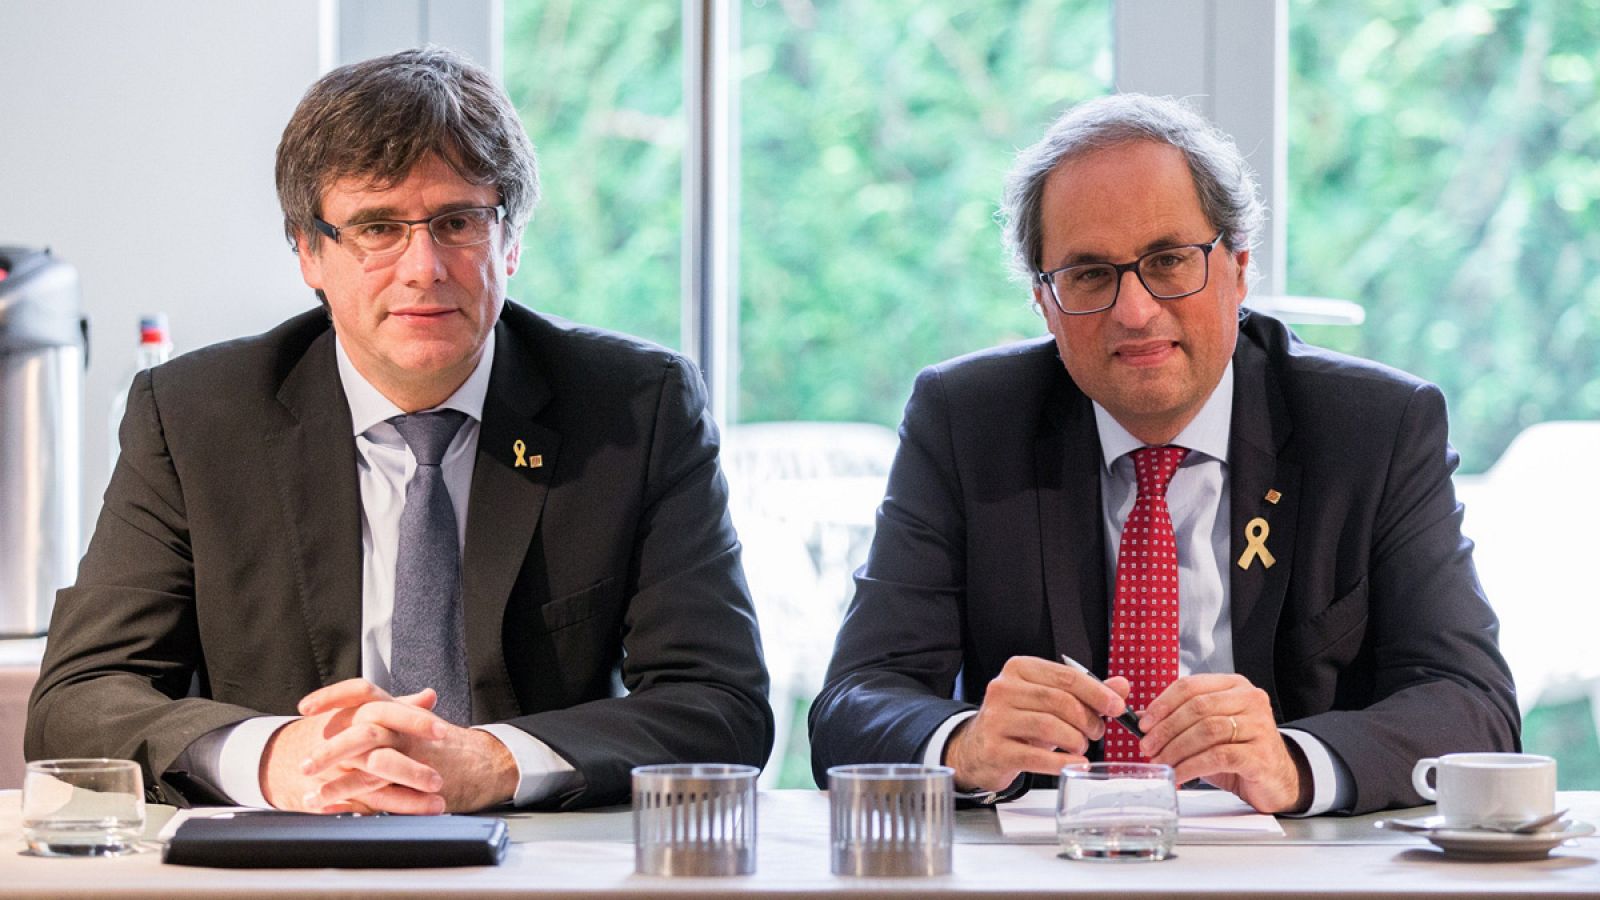 El presidente de la Generalitat, Quim Torra posa junto al expresidente catalán Carles Puigdemont, durante una reunión en Waterllo, Bélgica